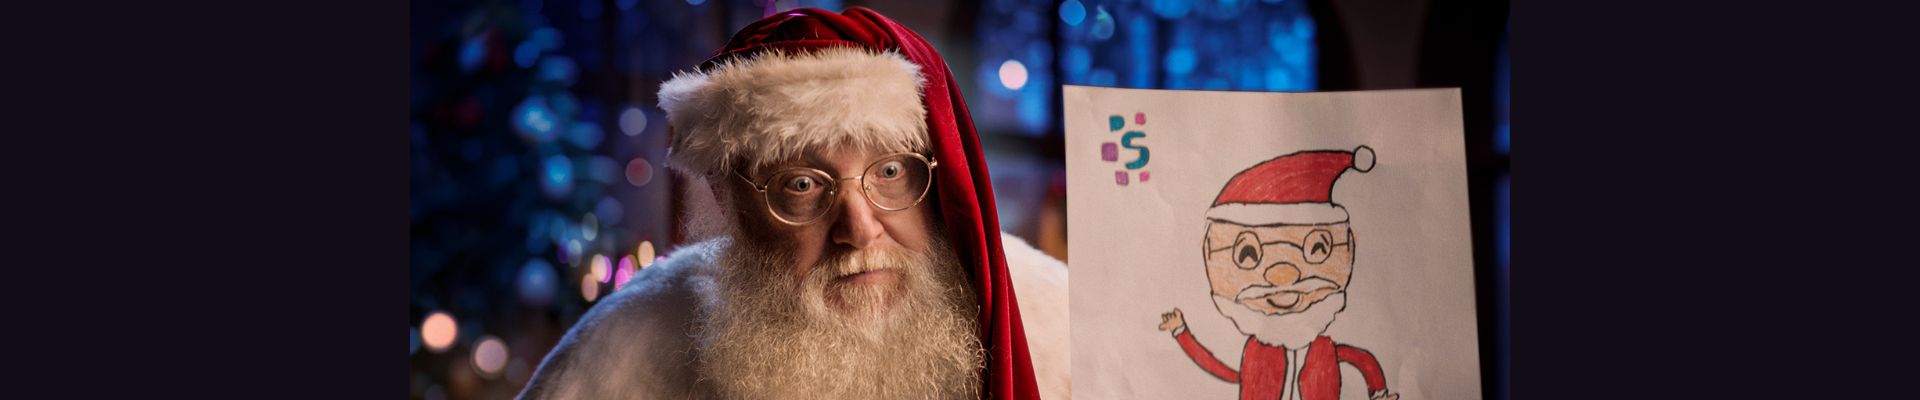 Campanha da Serasa Experian “autentica” a identidade do Papai Noel para conscientizar sobre fraudes